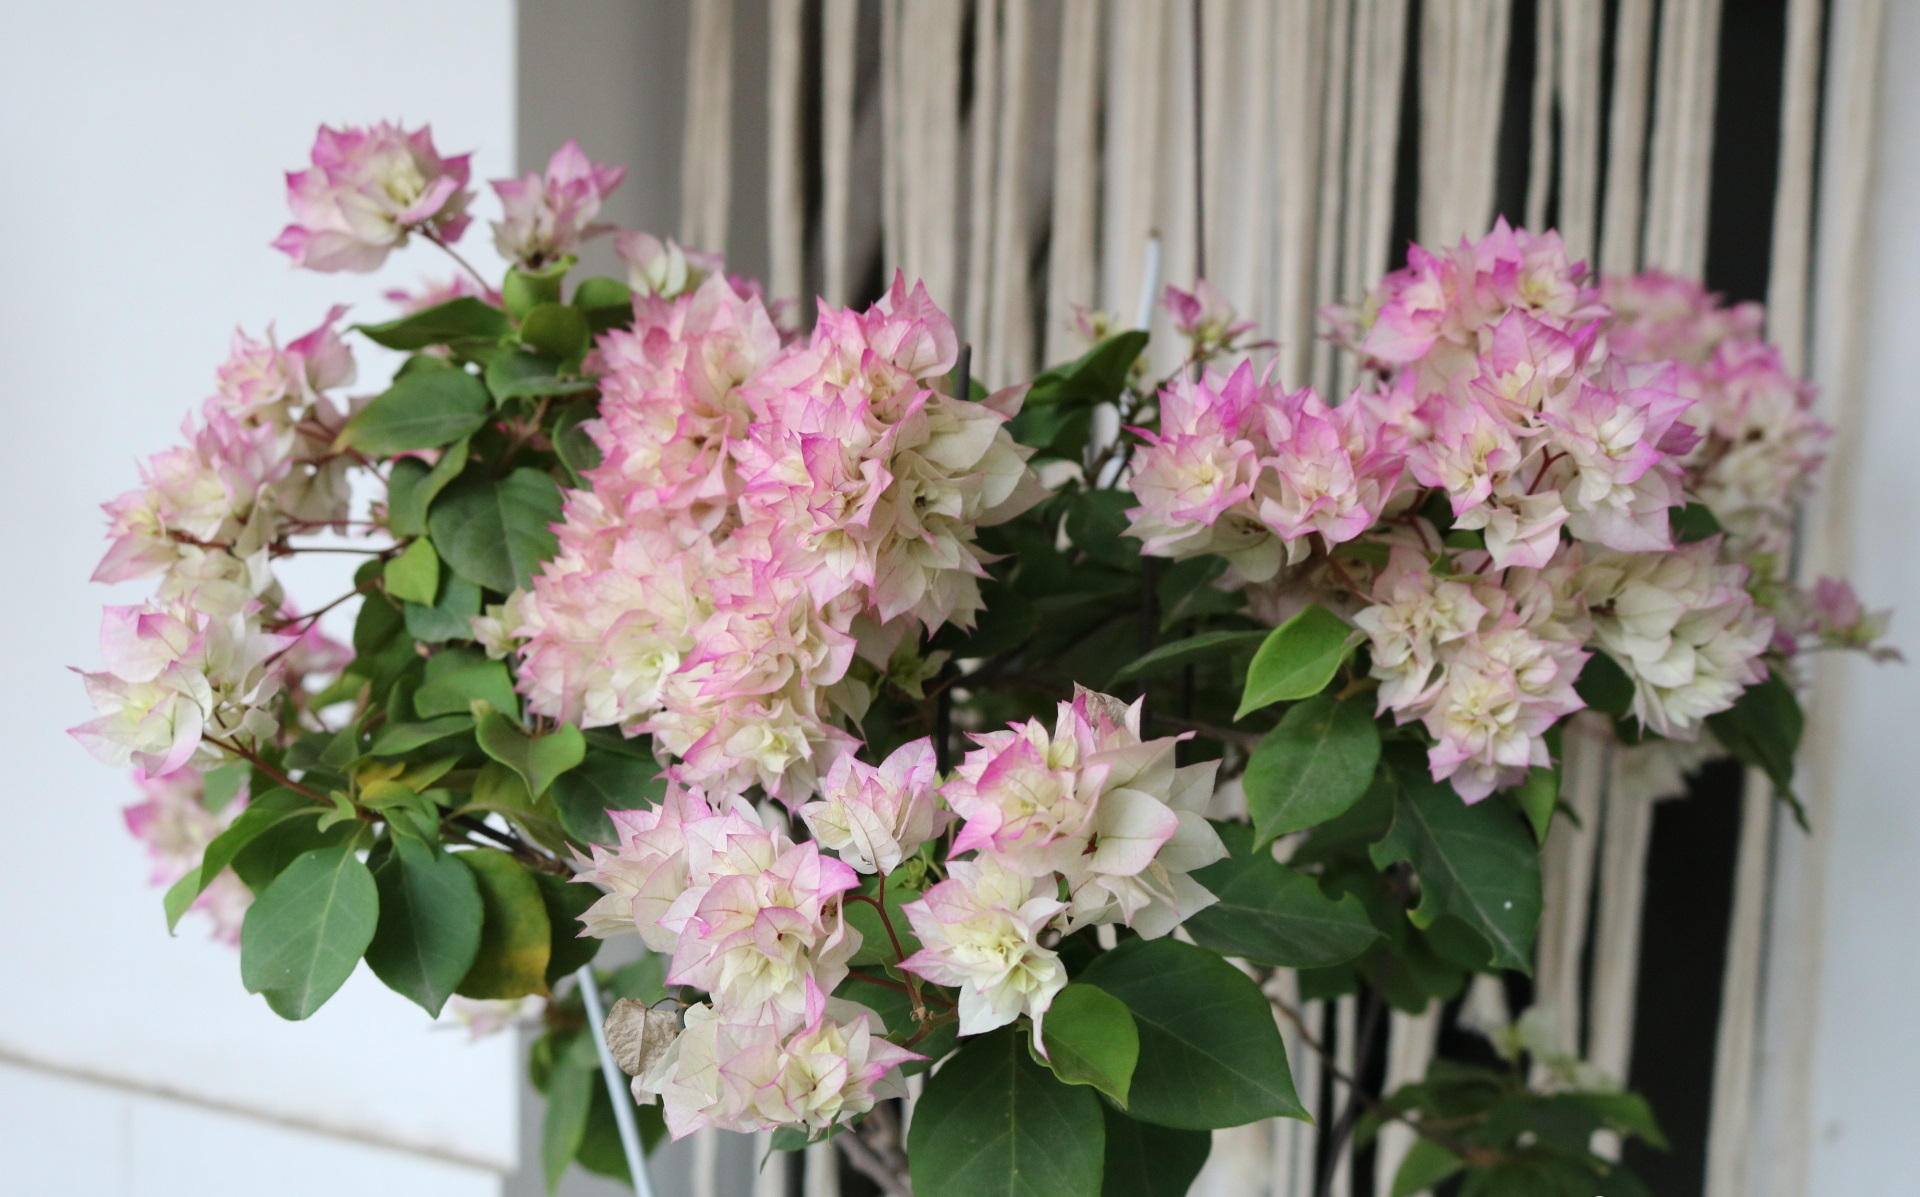 和多数月季花一样,西施怡锦也是一个花色会变化的品种,花朵初开时是翠